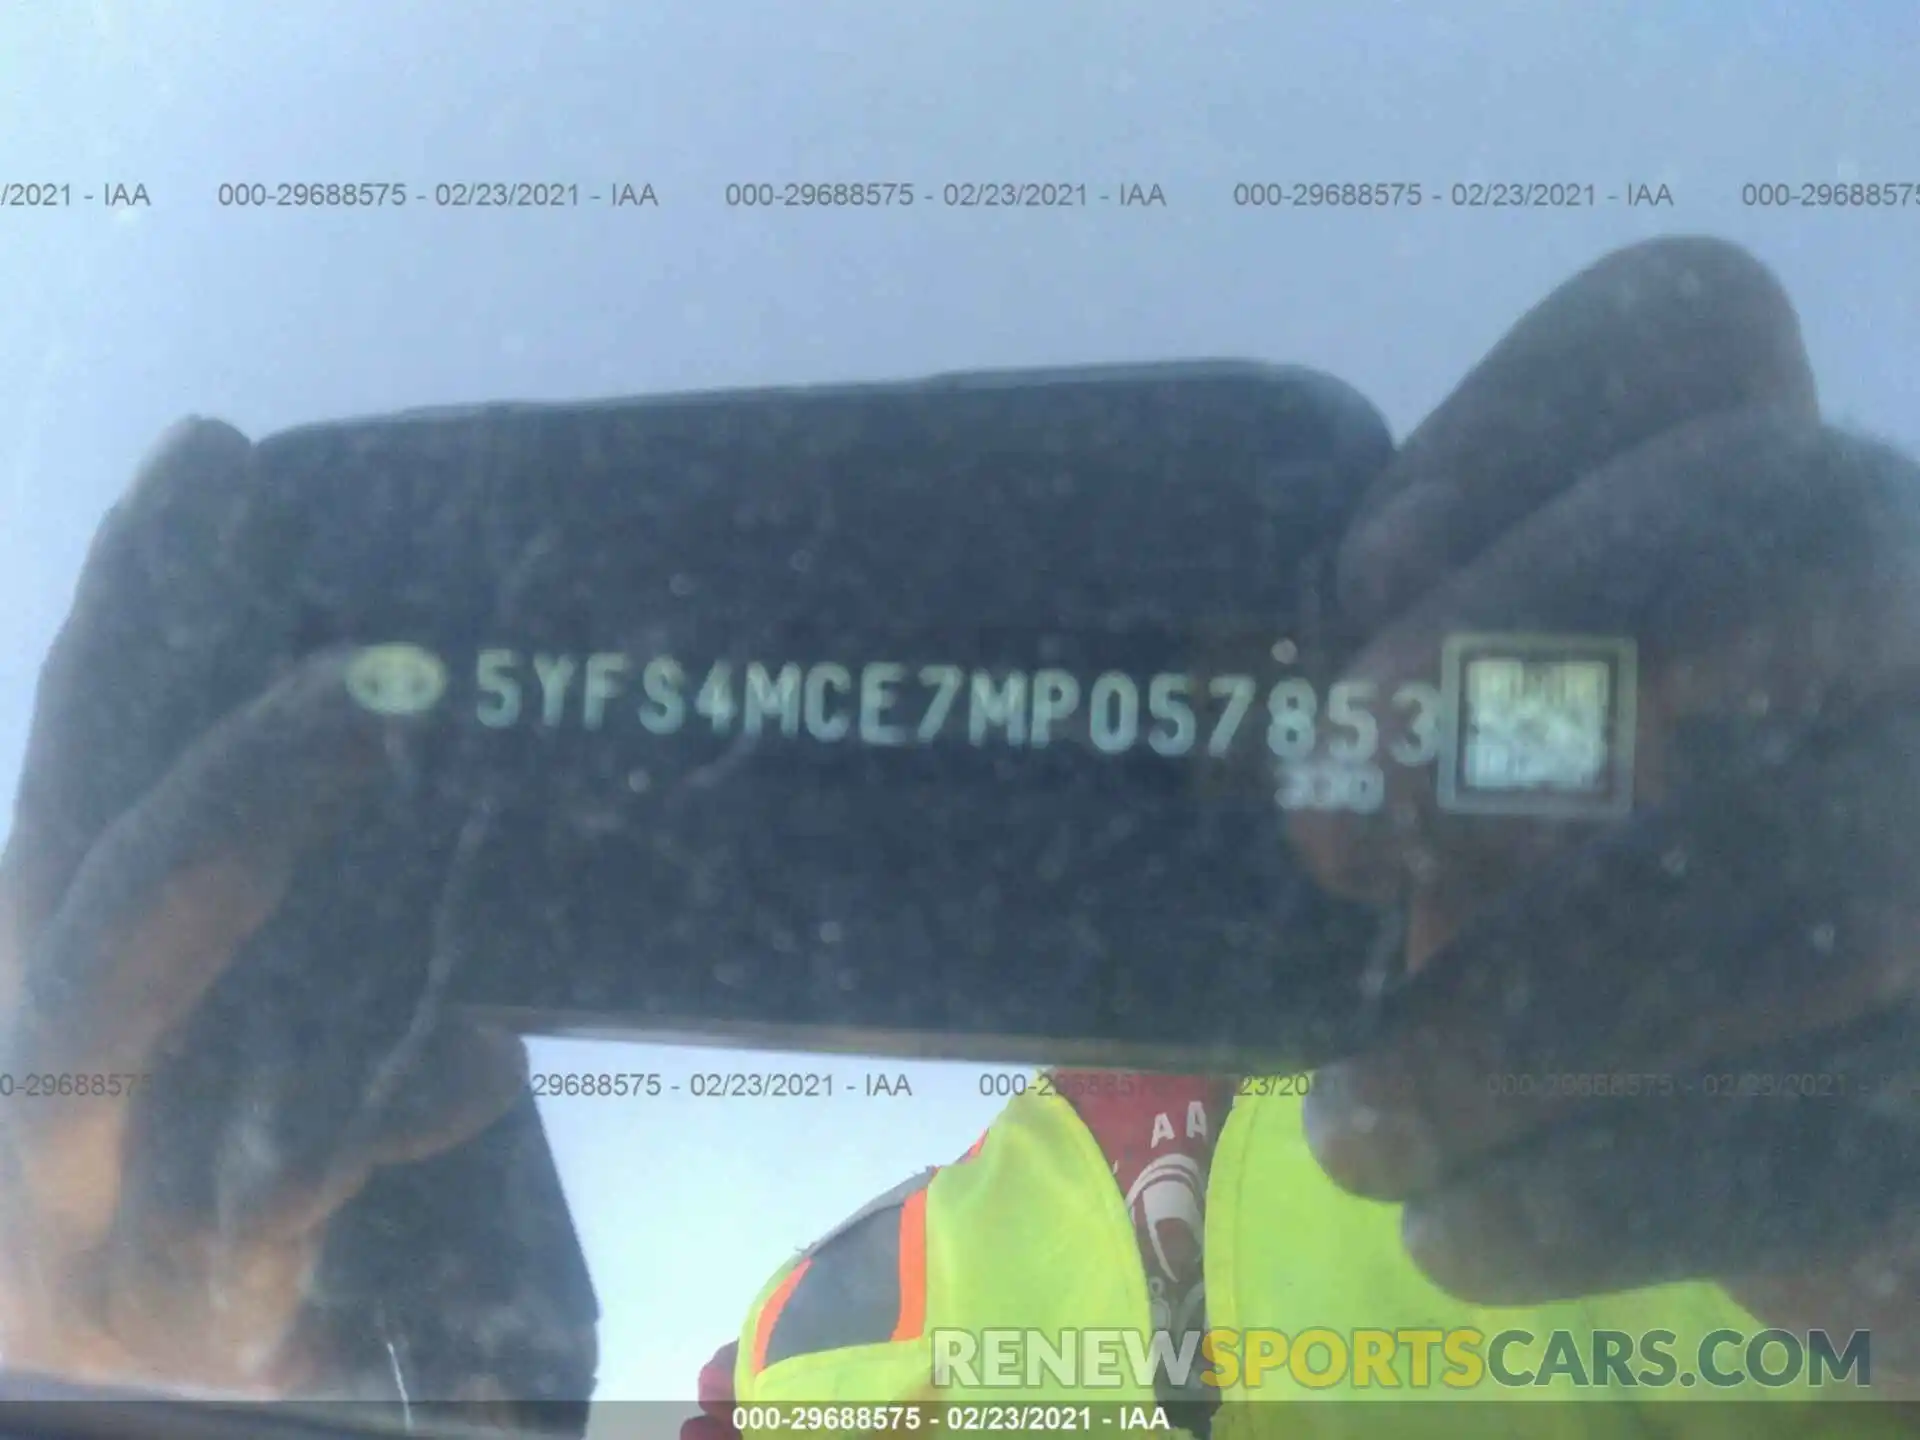 9 Photograph of a damaged car 5YFS4MCE7MP057853 TOYOTA COROLLA 2021